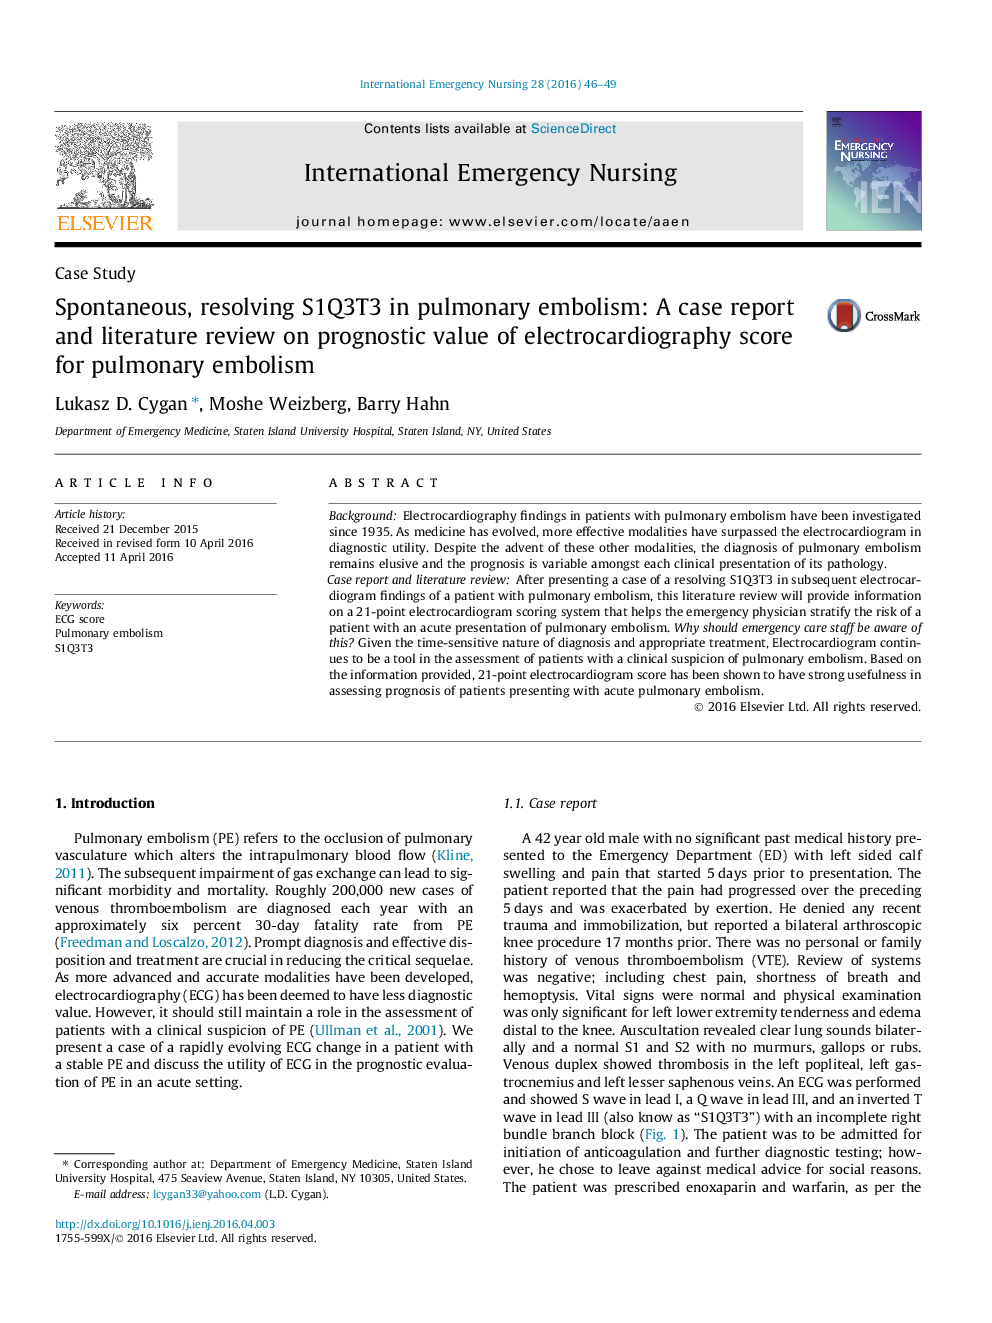 خودانگیخته، حل و فصل S1Q3T3 در آمبولی ریوی: گزارش موردی و بررسی متون درباره ارزش پیش بینی امتیاز الکتروکاردیوگرافی برای آمبولی ریه